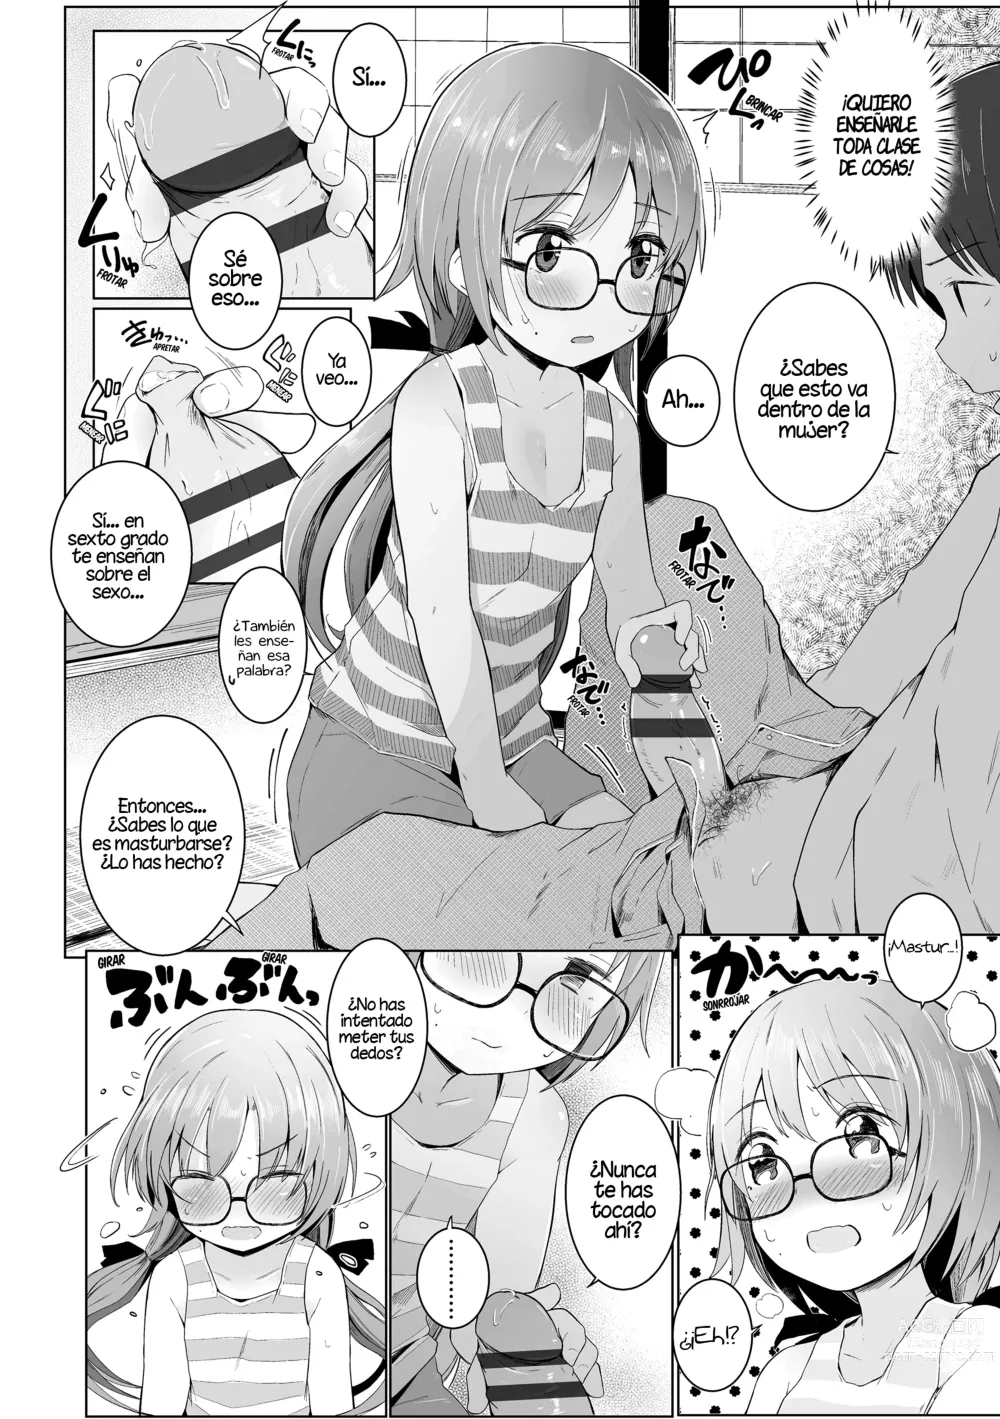 Page 8 of manga ¡Por favor, Sensei!